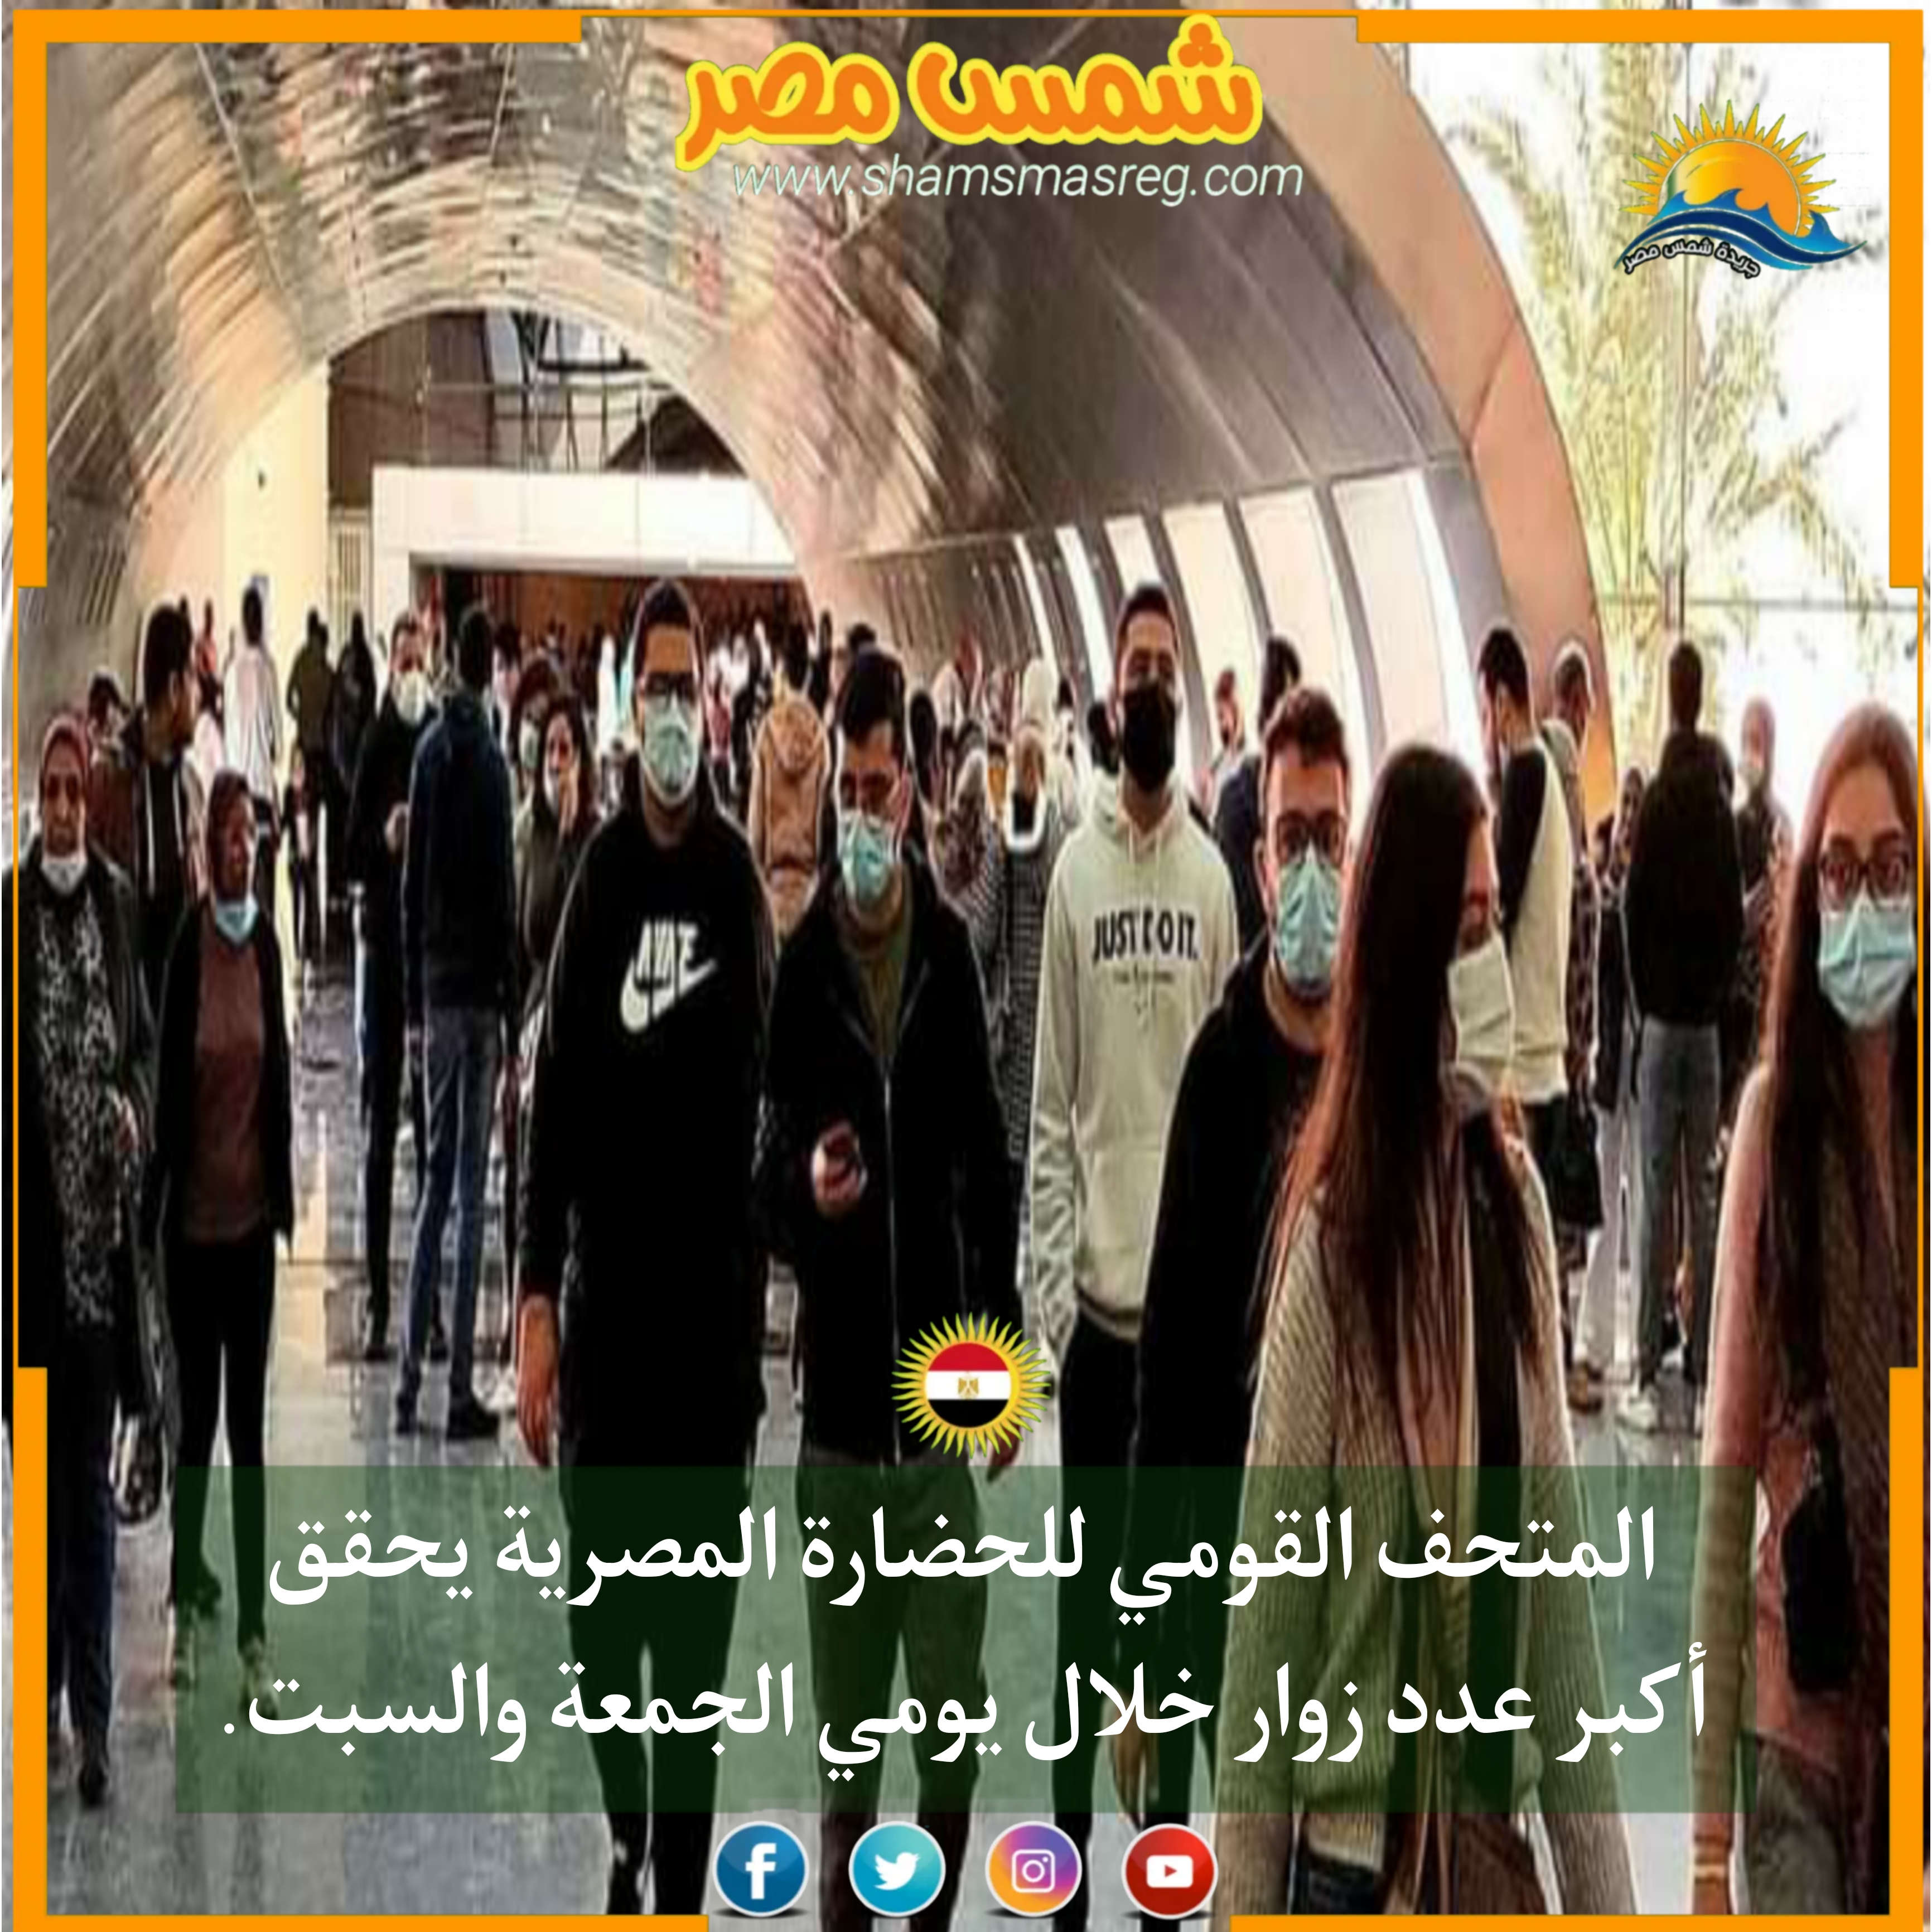 |شمس مصر|.. المتحف القومي للحضارة المصرية يحقق أكبر عدد زوار خلال يومي الجمعة والسبت